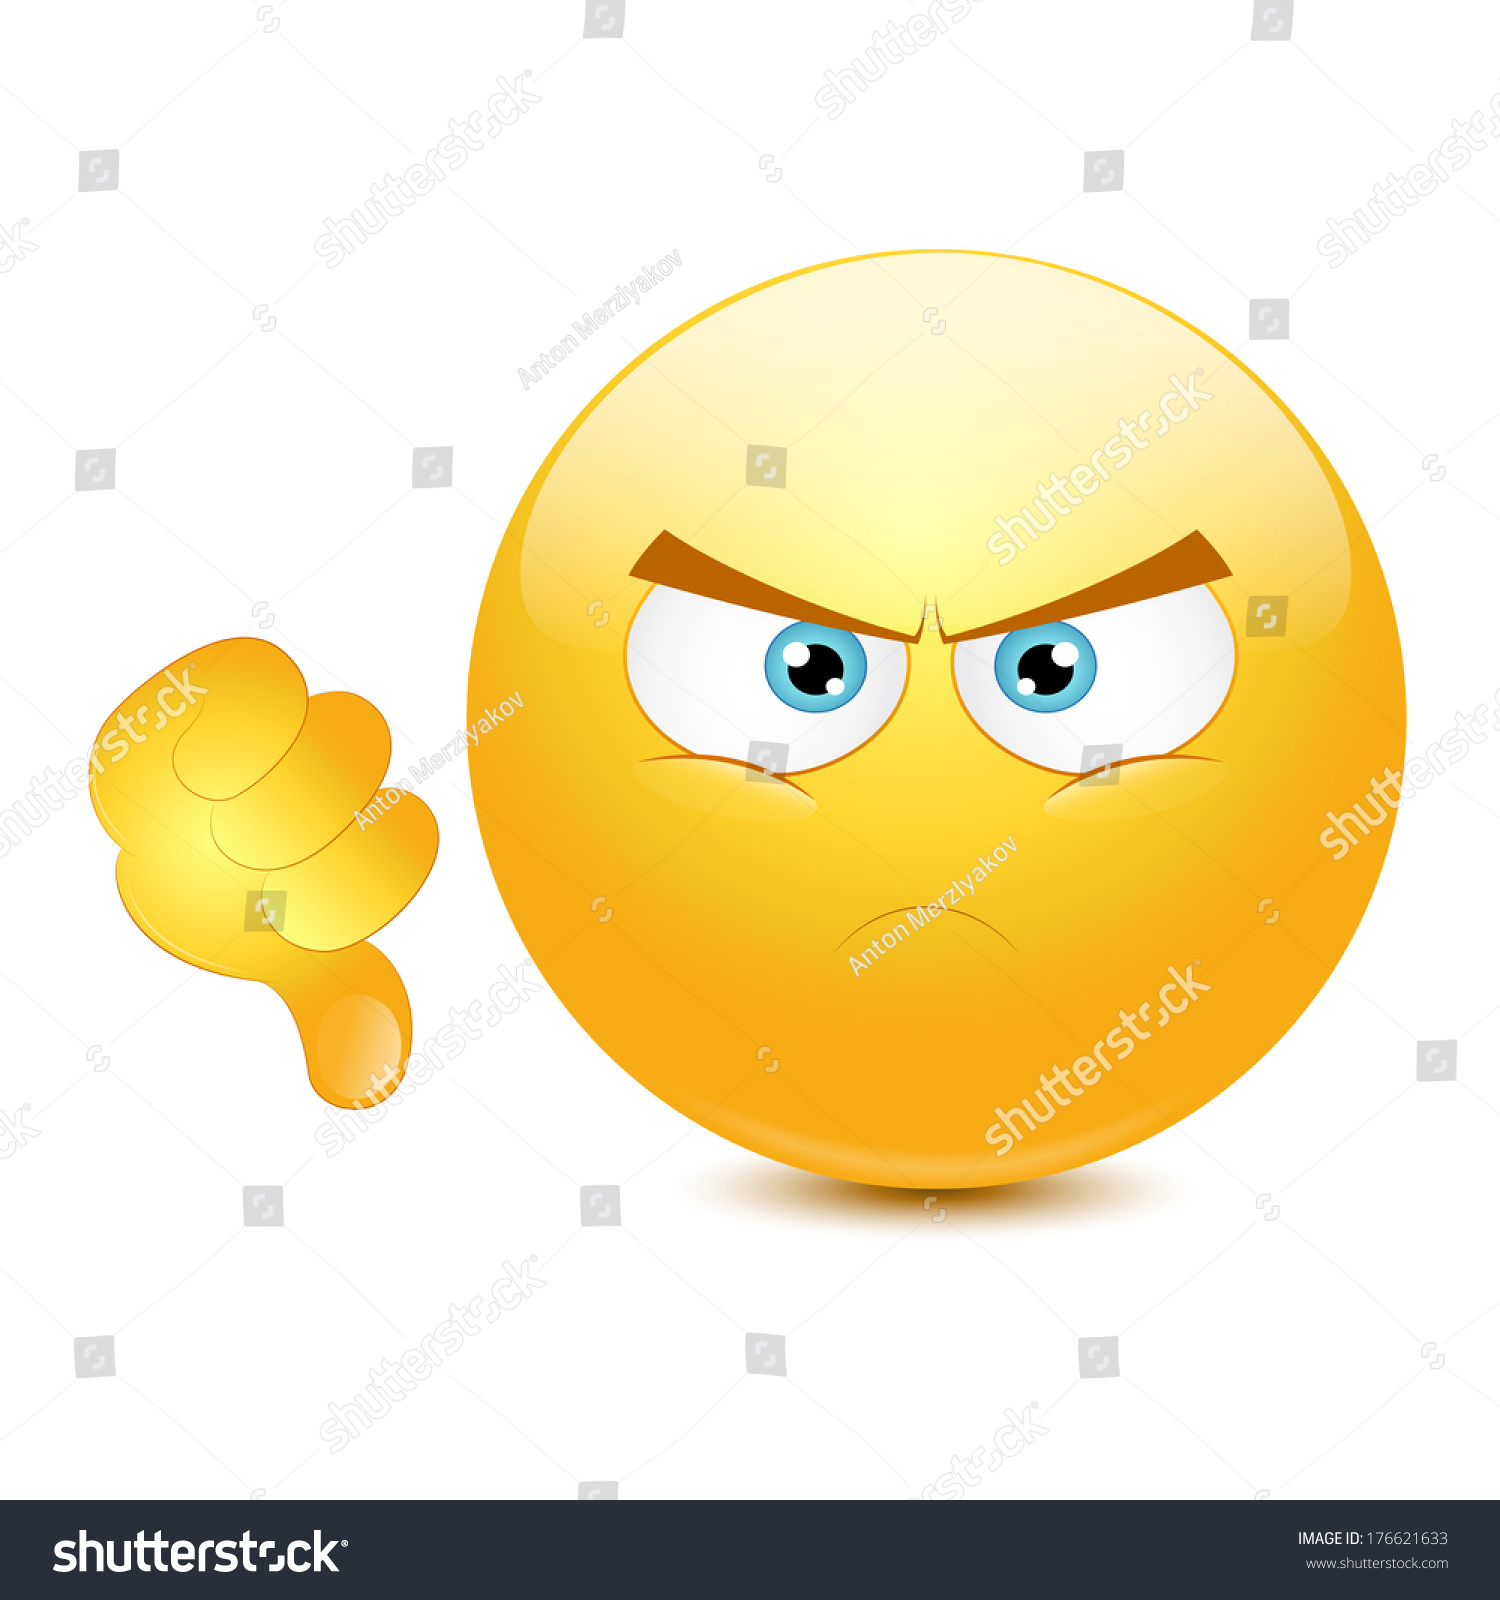 Dislike Emoticon On White Background Stock Vector 176621633 - Shutterstock